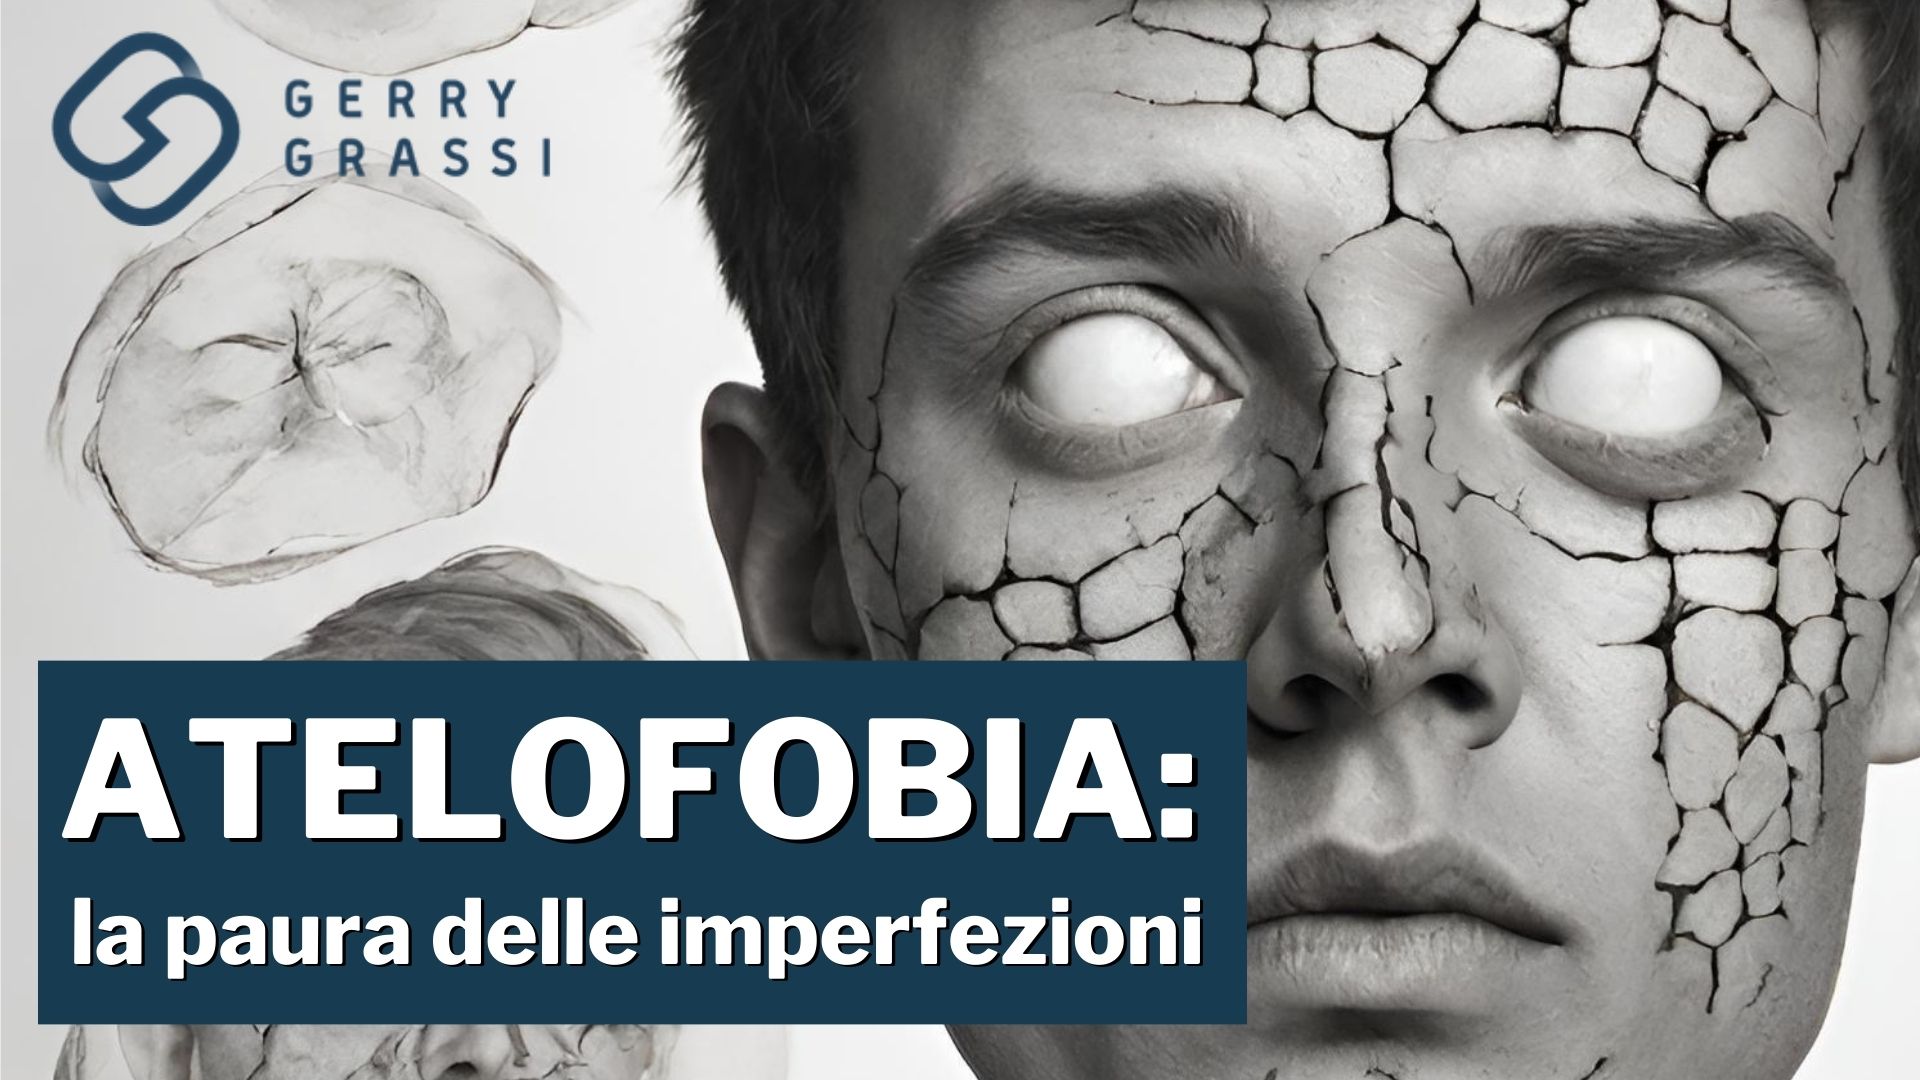 Atelofobia: gli effetti della paura delle imperfezioni